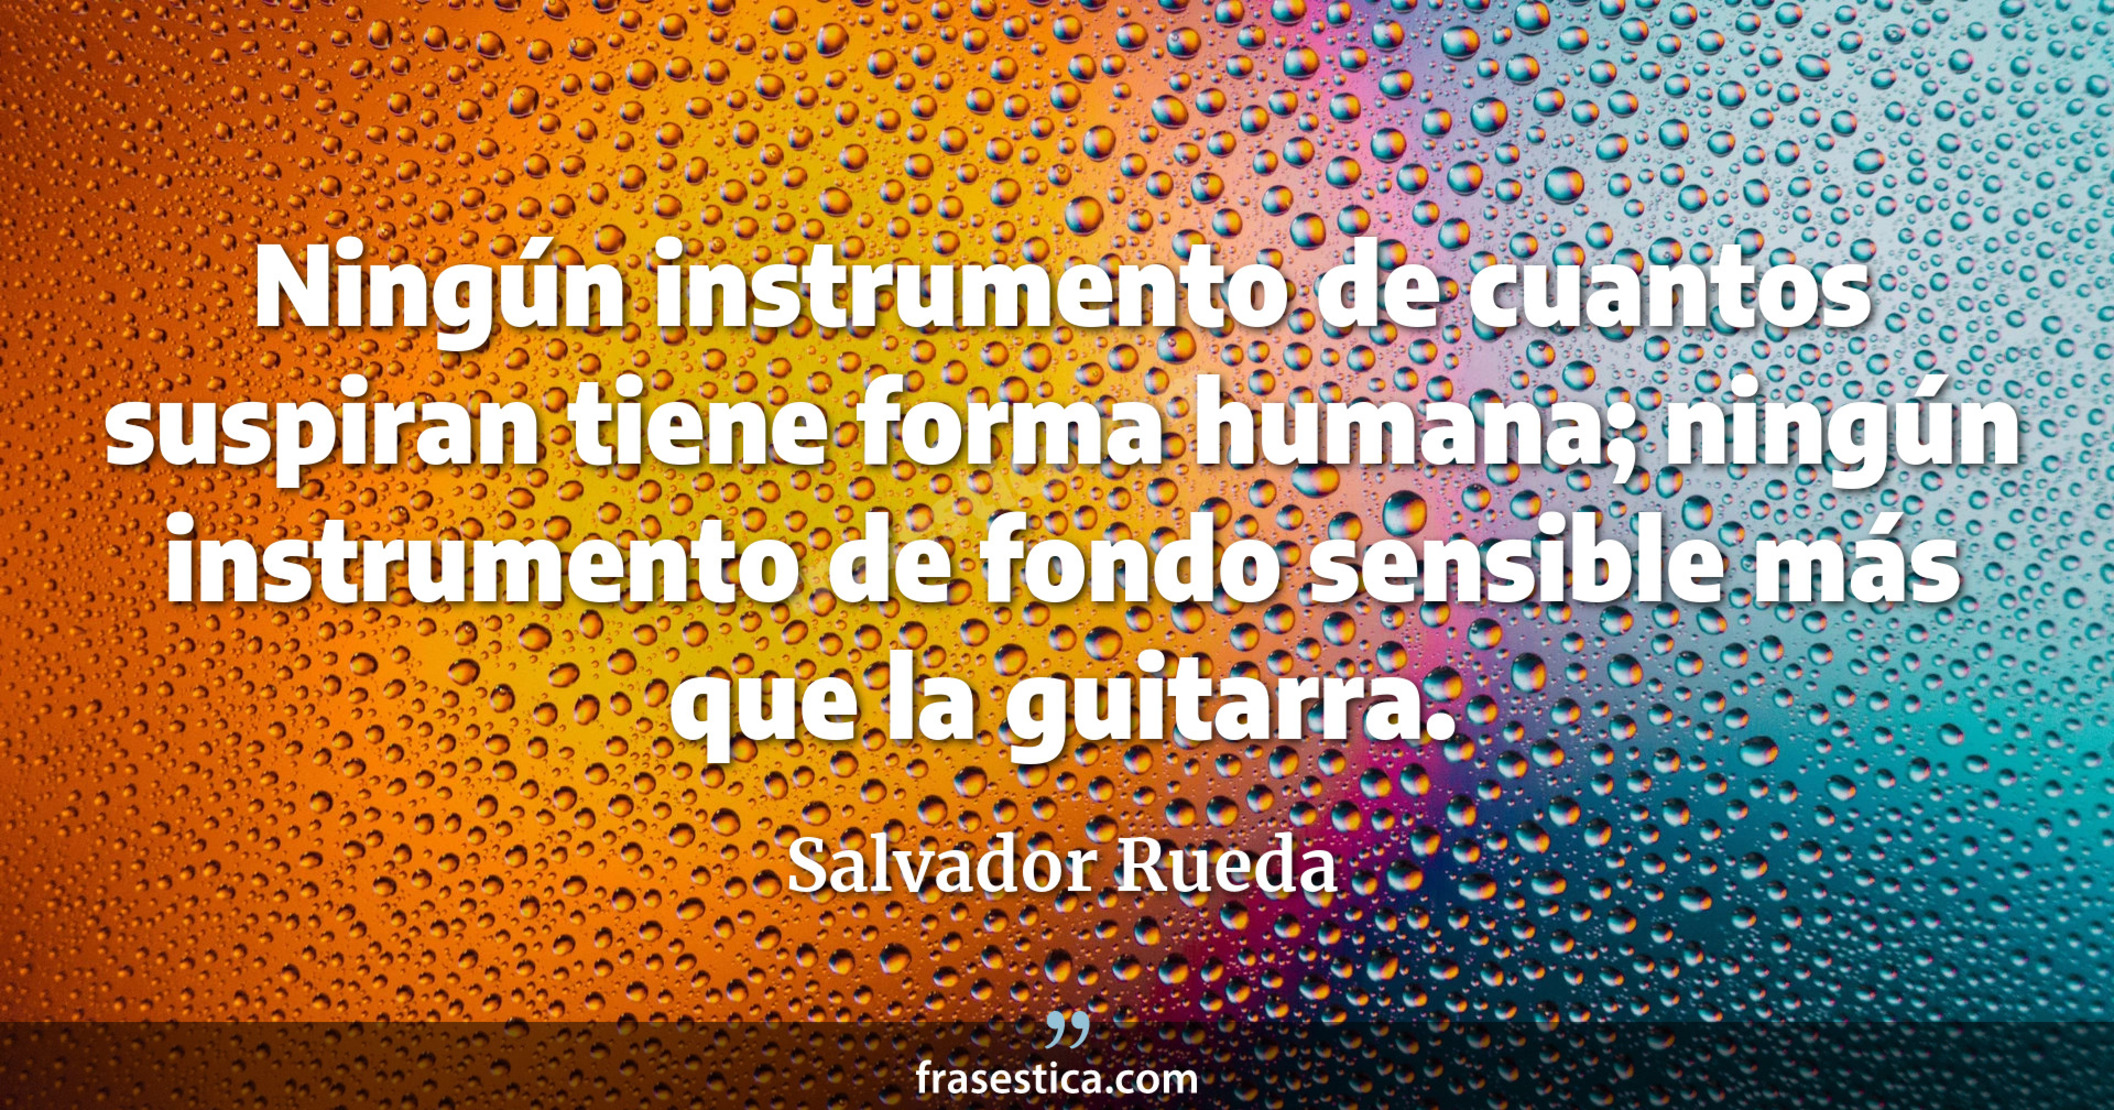 Ningún instrumento de cuantos suspiran tiene forma humana; ningún instrumento de fondo sensible más que la guitarra. - Salvador Rueda